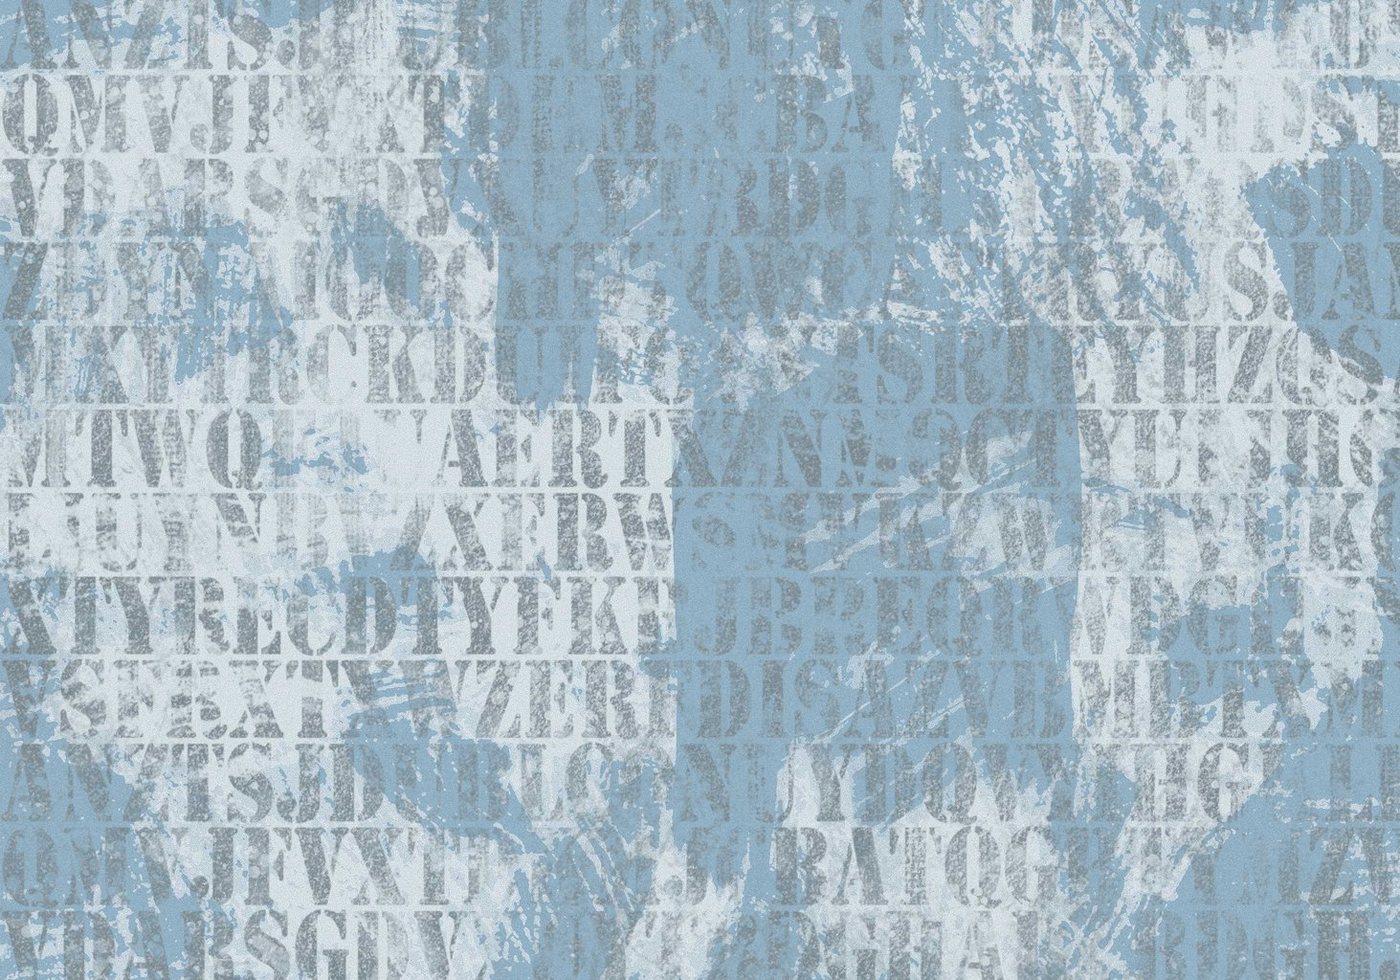 wandmotiv24 Fototapete Wörter auf blau grauem Hintergrund, strukturiert, Wandtapete, Motivtapete, matt, Vinyltapete, selbstklebend von wandmotiv24